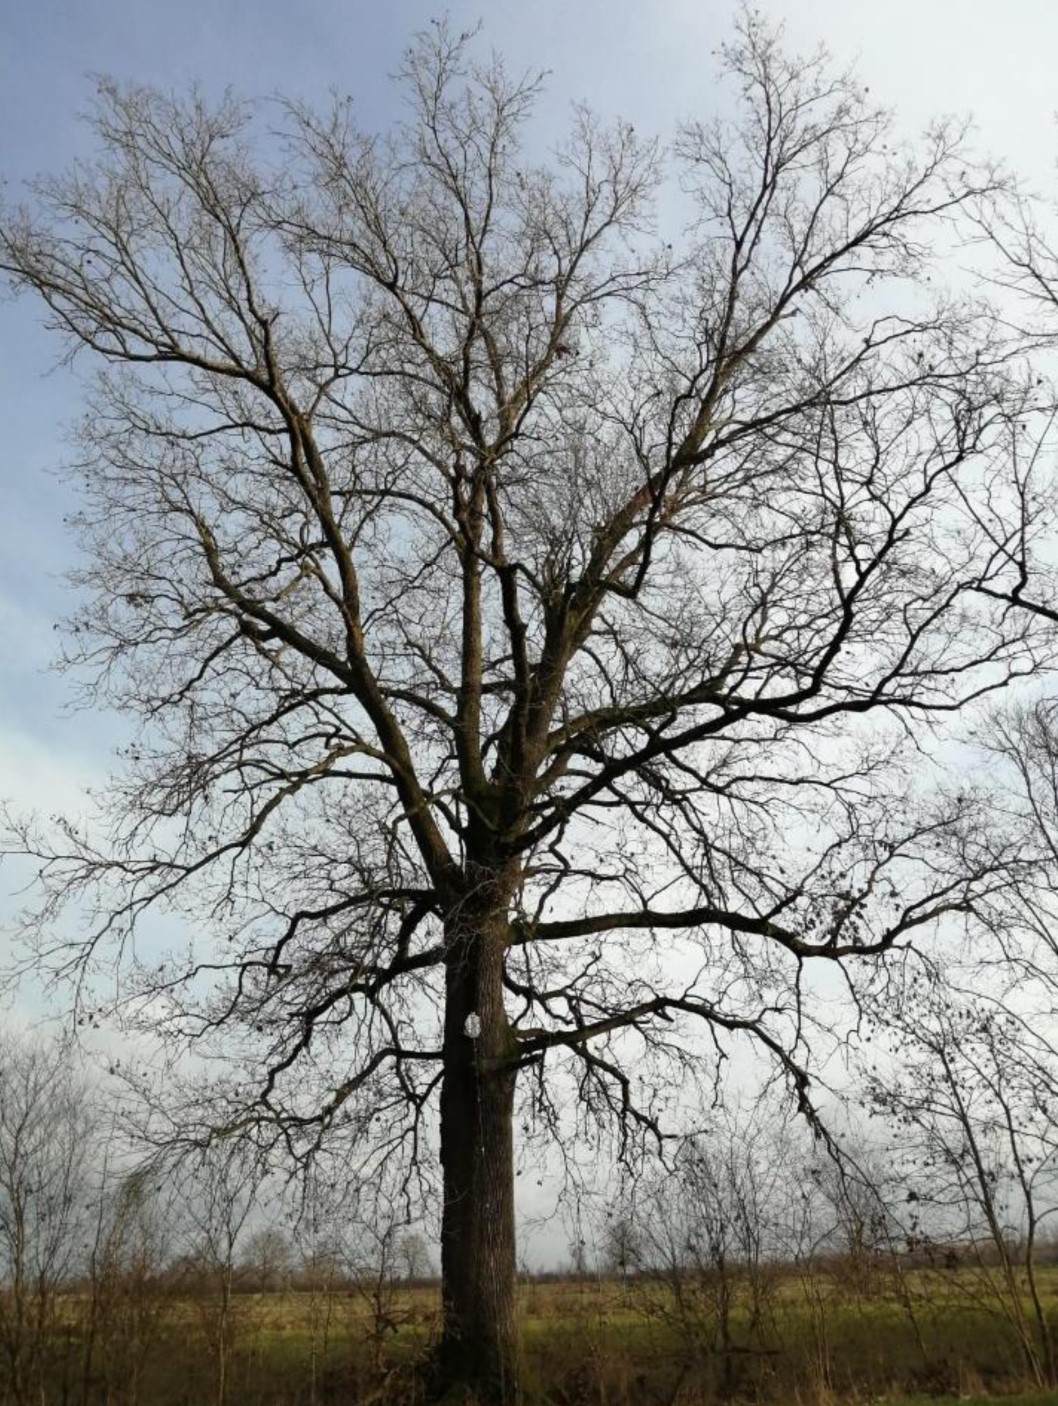 La quercia gigante (1)